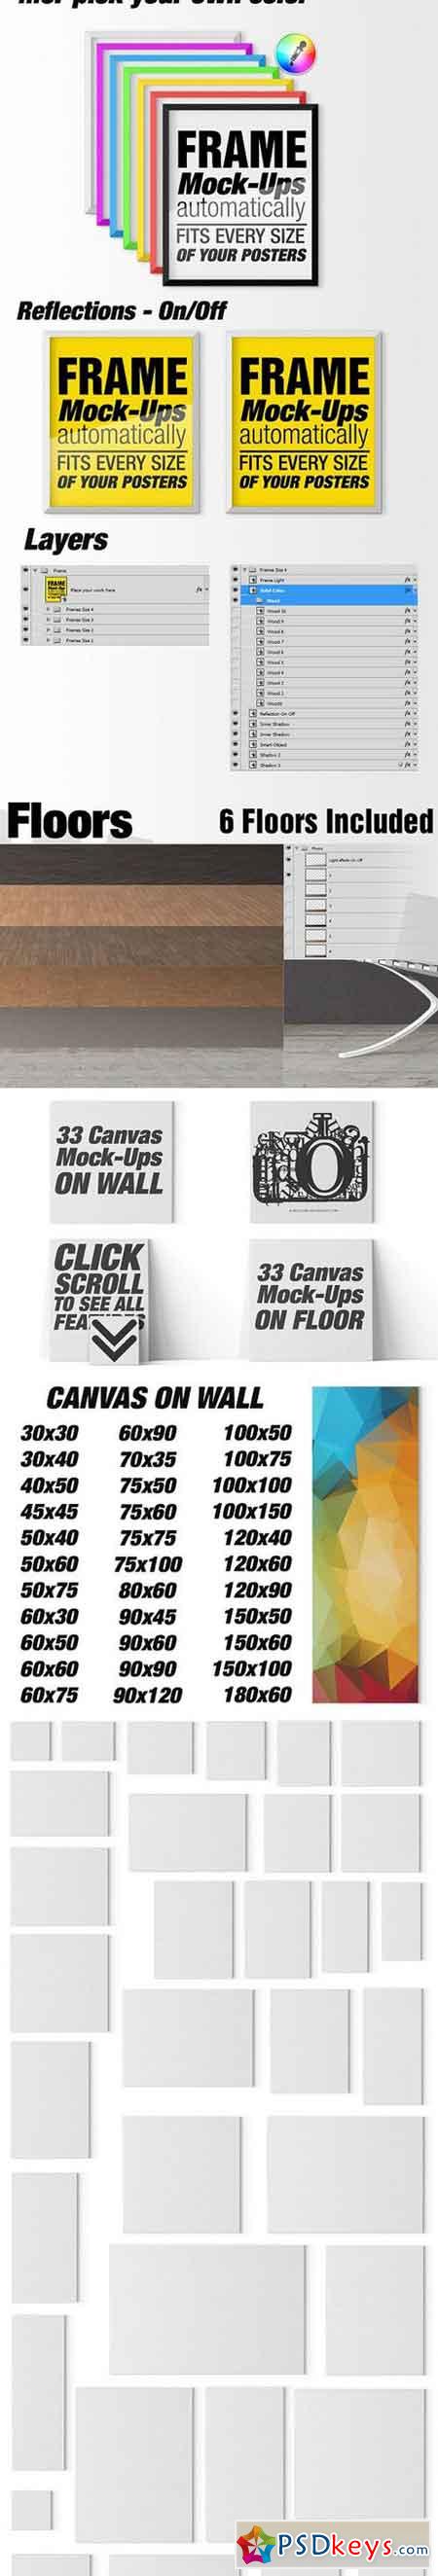 Canvas Mockups - Frames Mockups v 3 842797